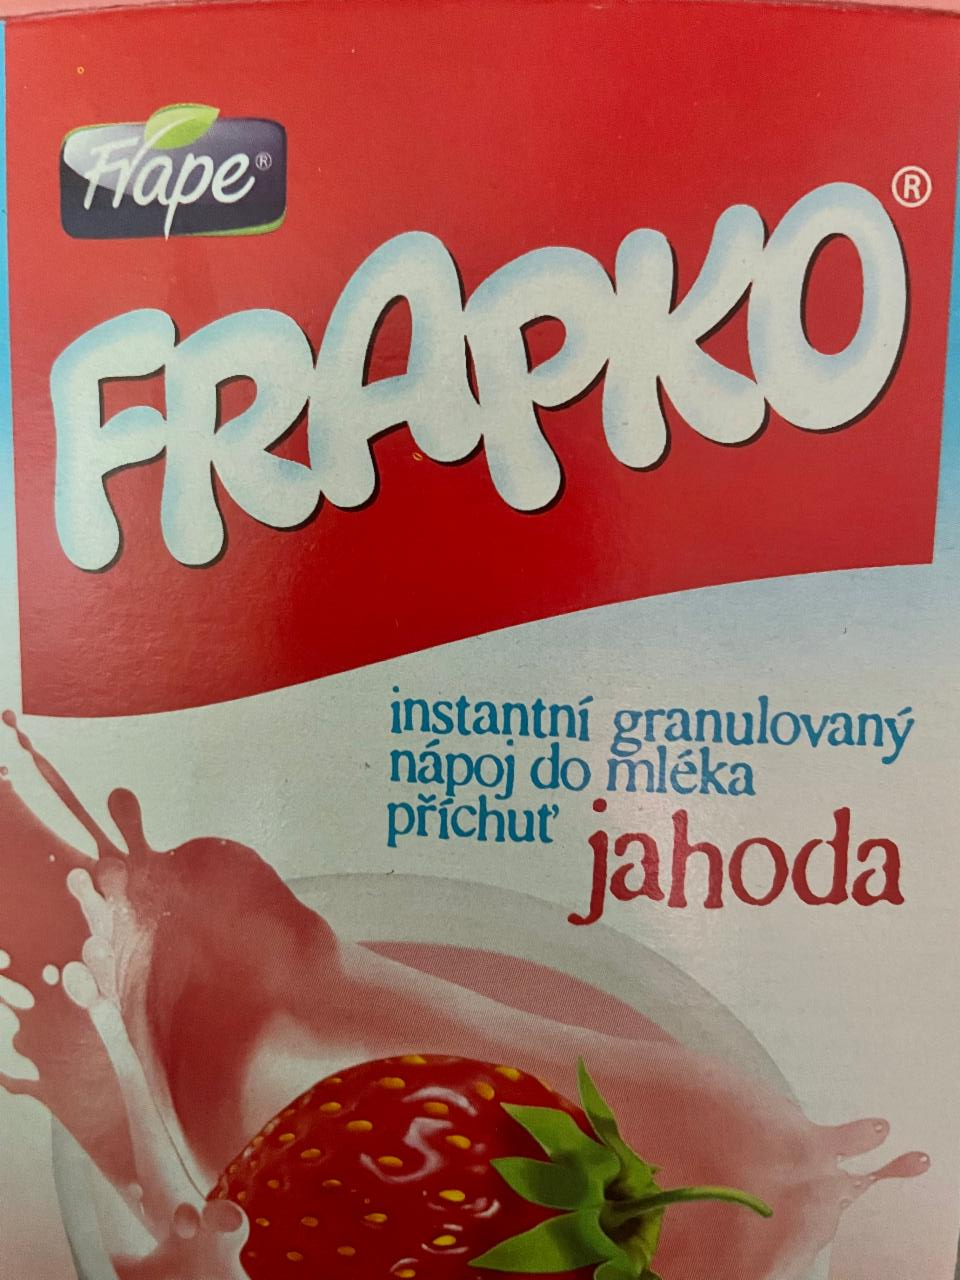 Фото - Напиток растворимый jahoda Frapko Frape